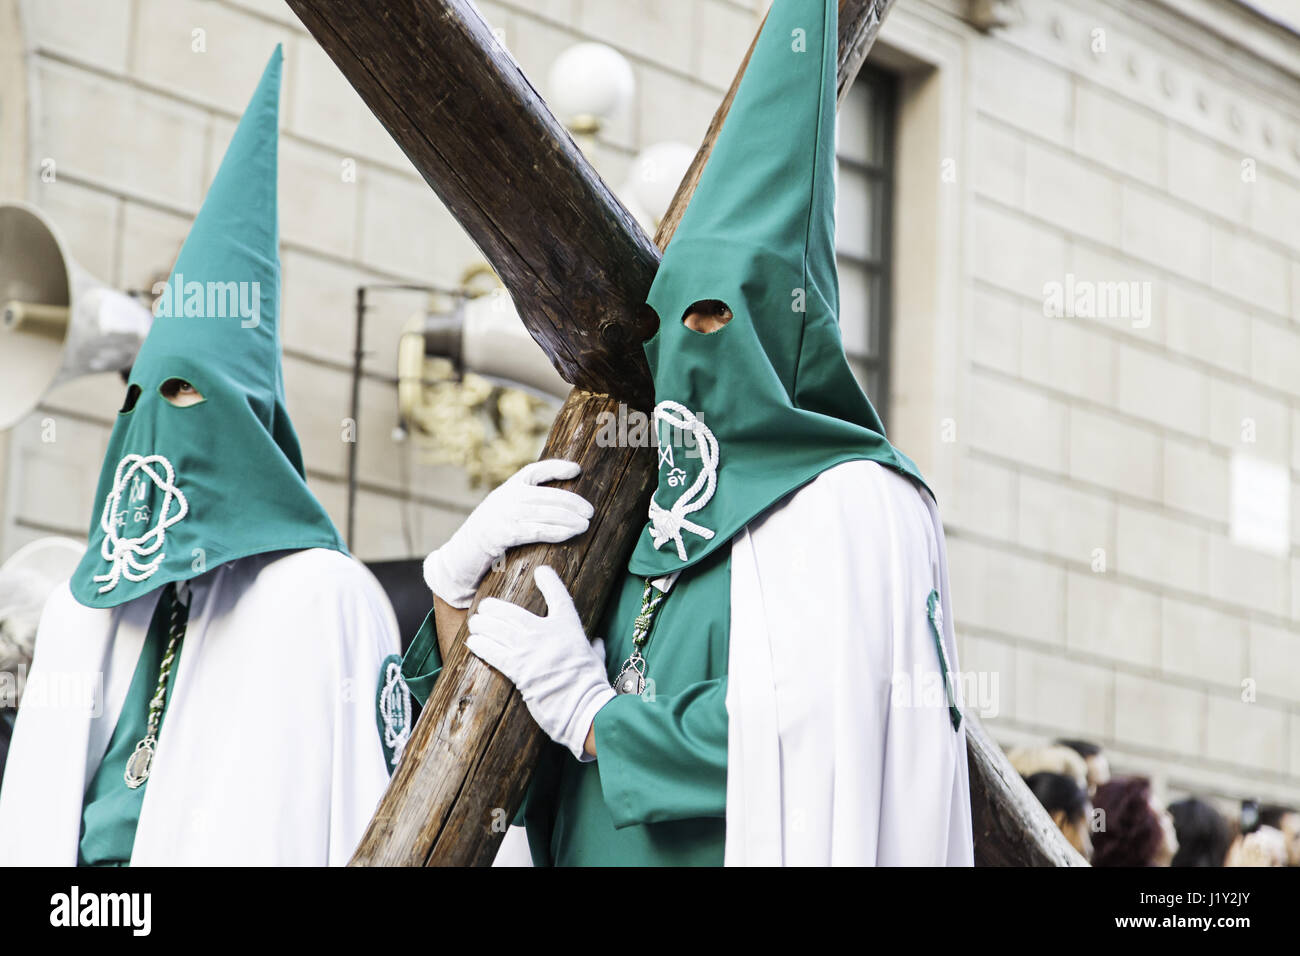 LOGROÑO, La Rioja, Espagne - 15 avril : Semaine Sainte, de la tradition religieuse avec procession de personnes en costumes traditionnels, le 15 avril 2017 à Logroño, La Rioja Banque D'Images